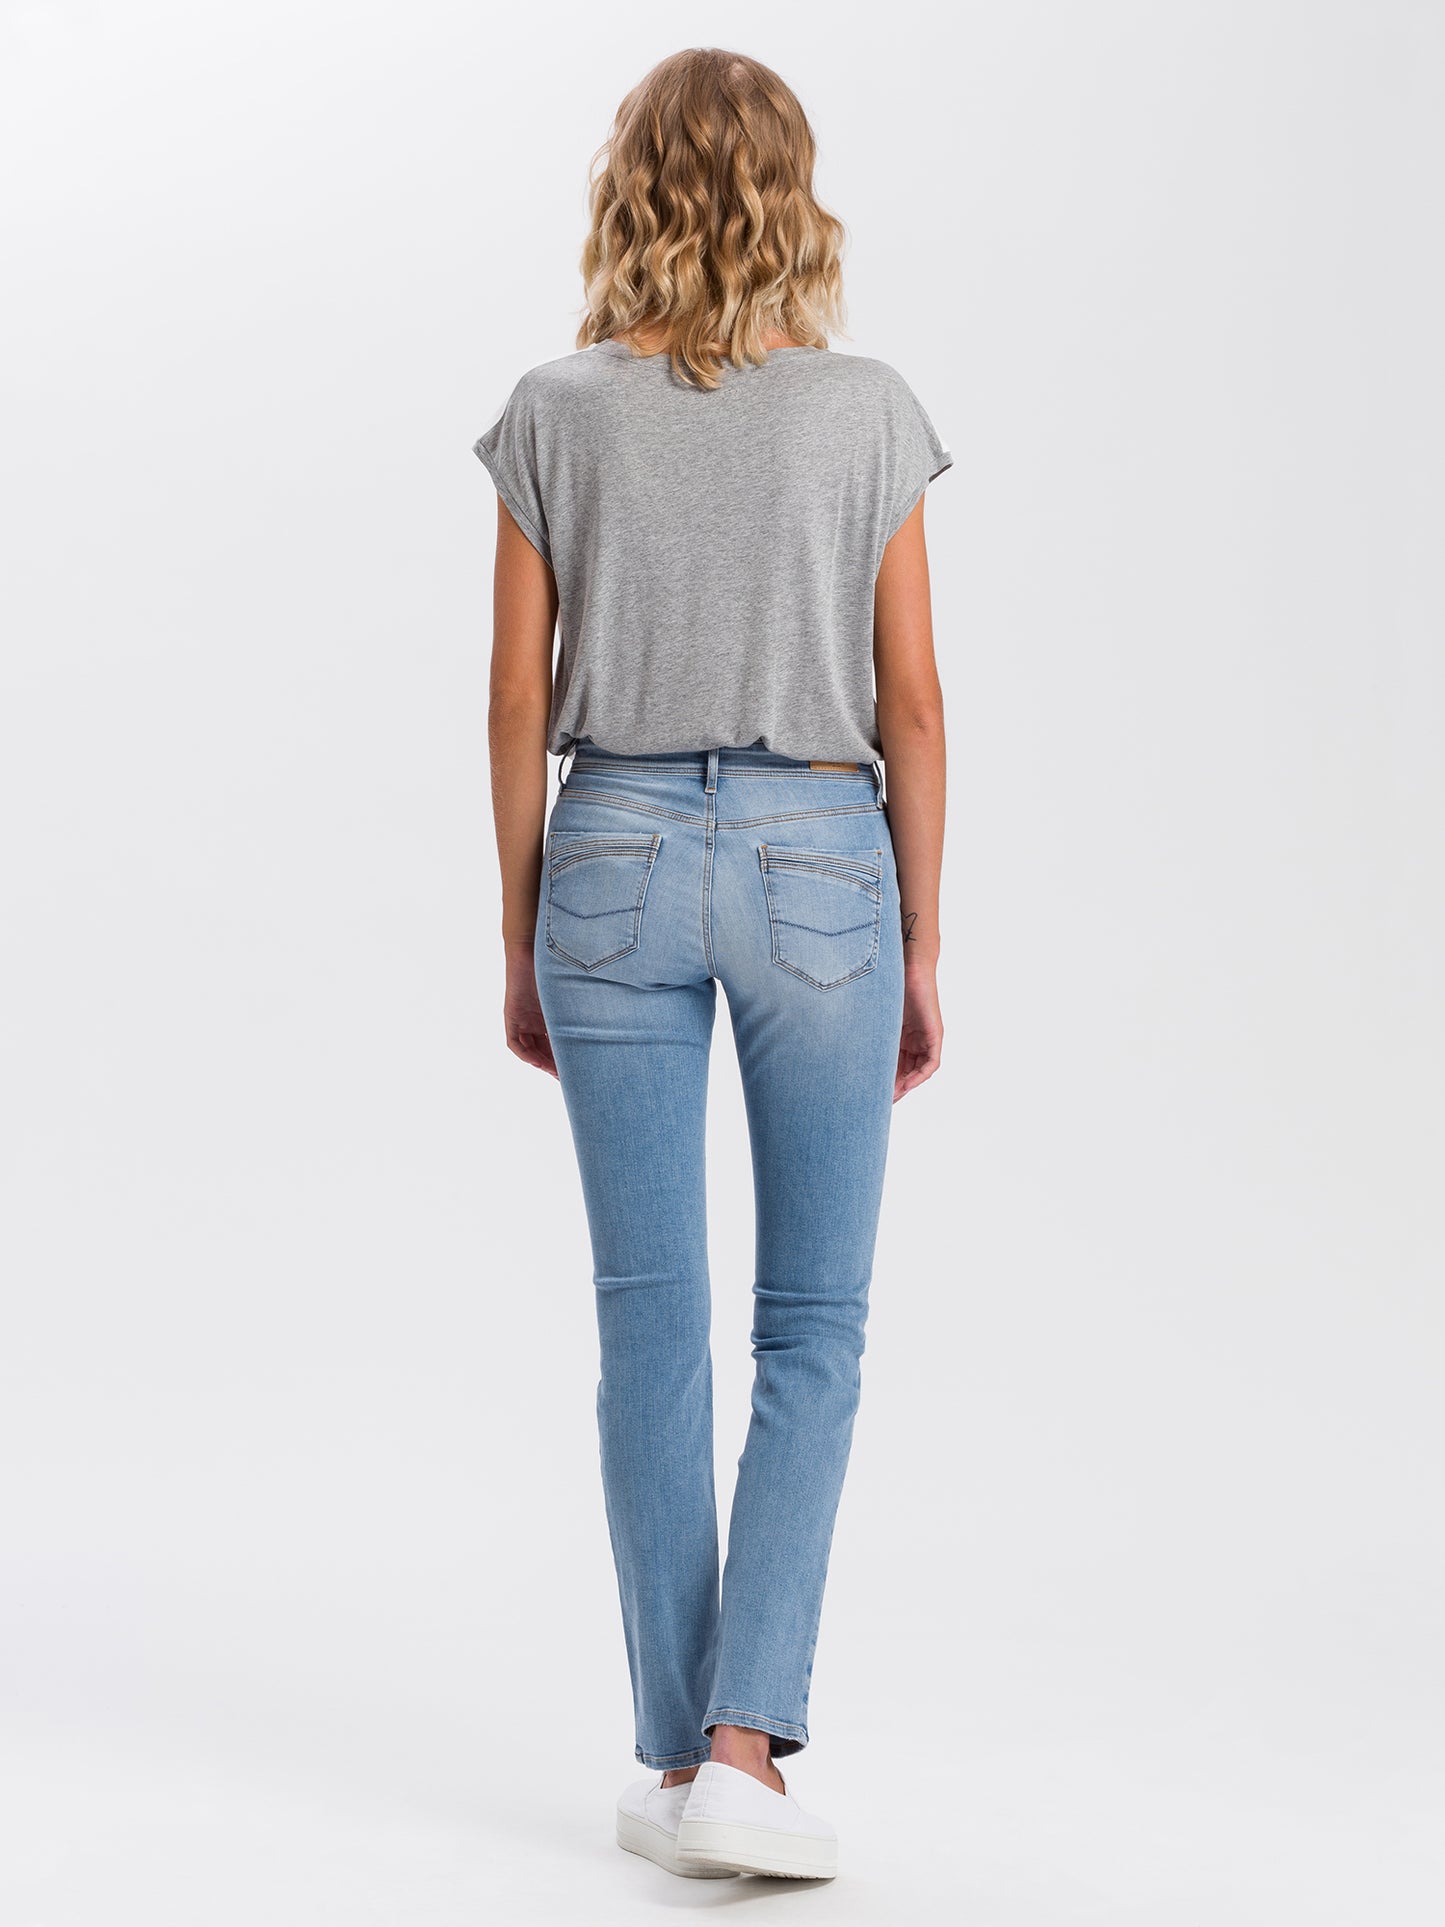 Anya women's jeans slim fit high waist light blue